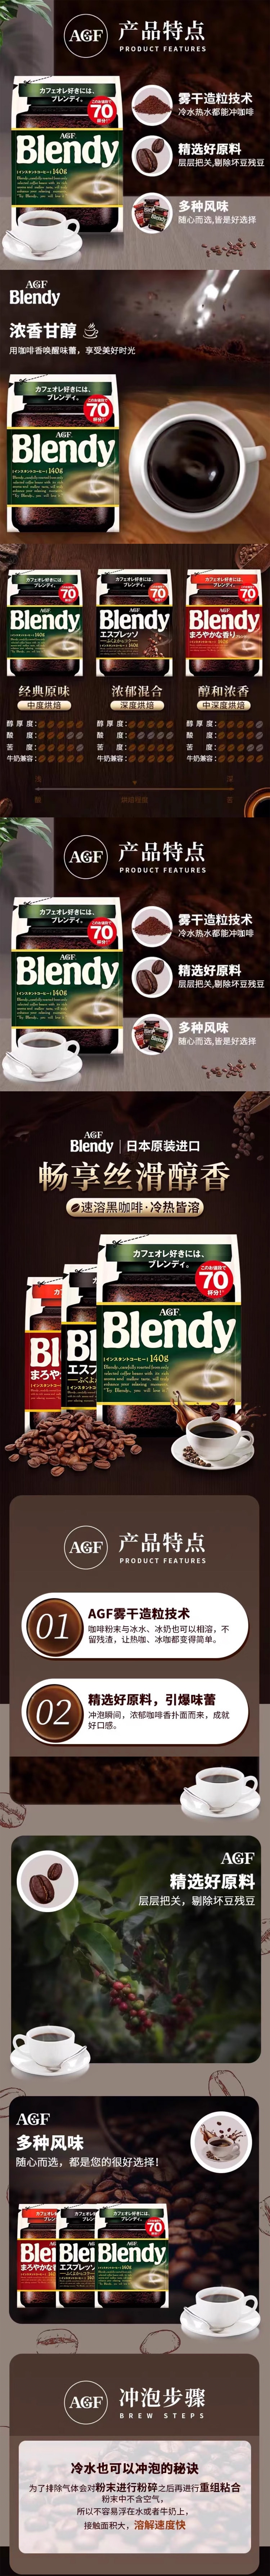 【日本直邮】AGF Blendy 醇香速溶咖啡 袋装 140g